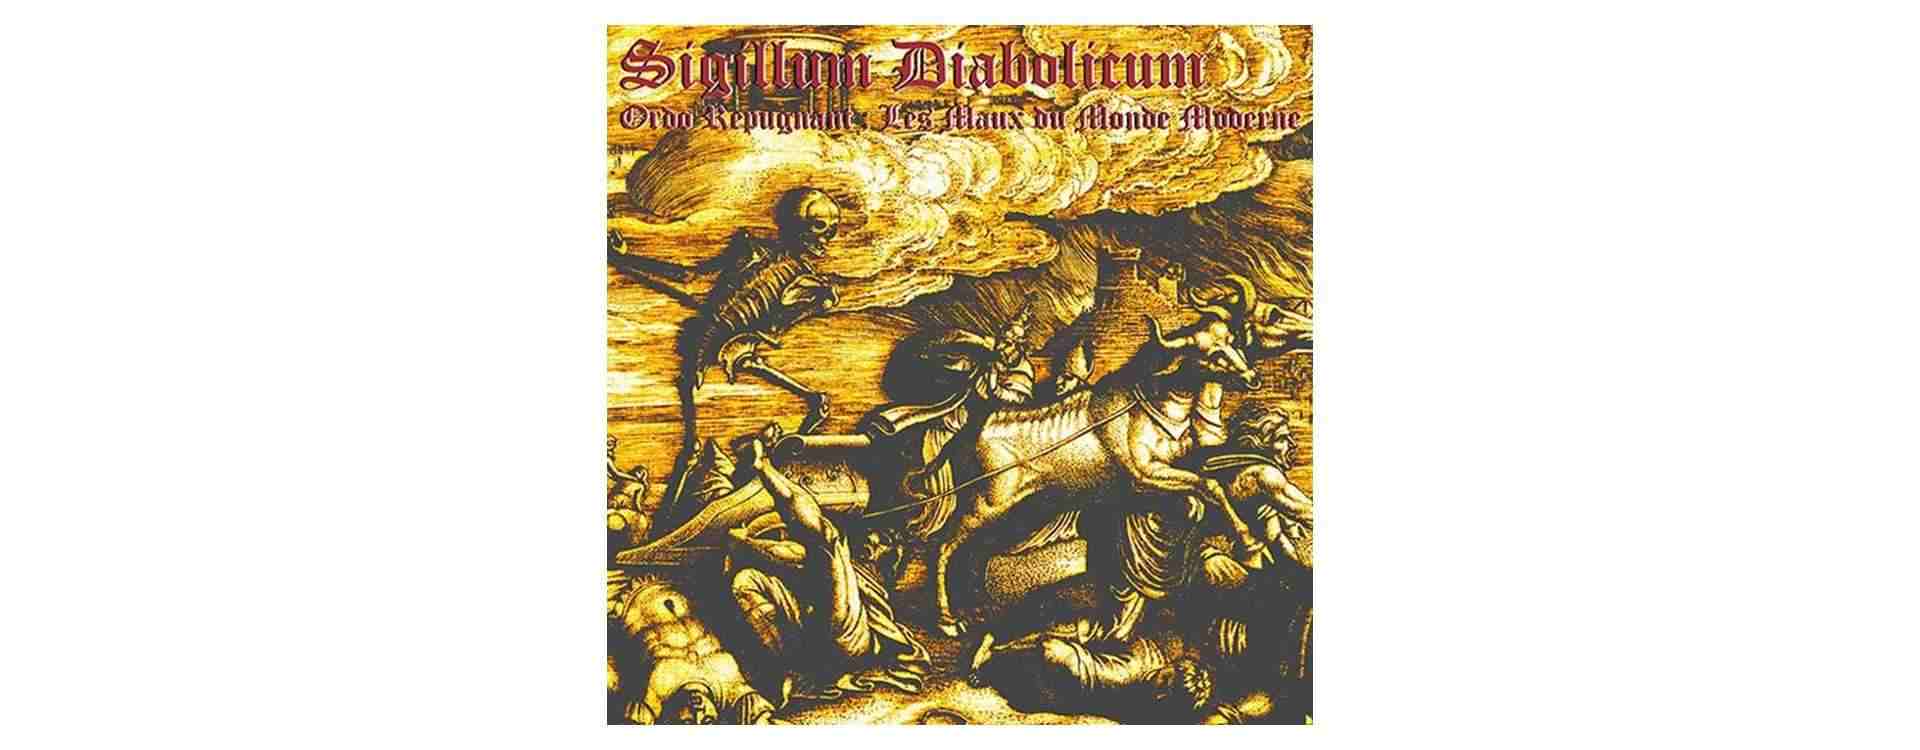 Sigillum Diabolicum - Ordo Repugnant - Hass Weg Productions image 1